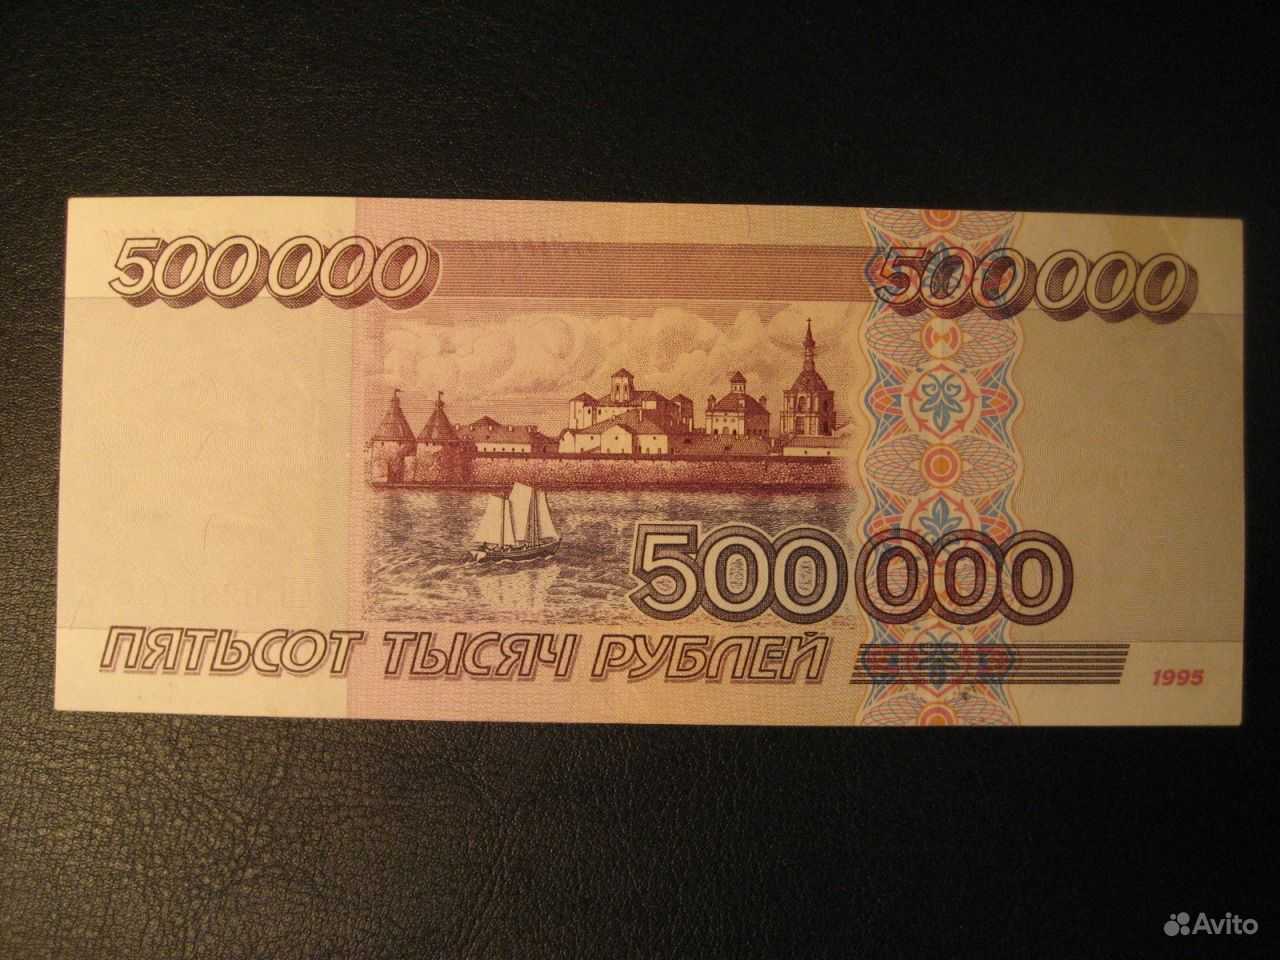 10 тыс нравится. 10 Тысяч рублей 1995. Купюры рублей 1995. 10 000 Рублей купюра 1995. 500 Тысяч купюра.